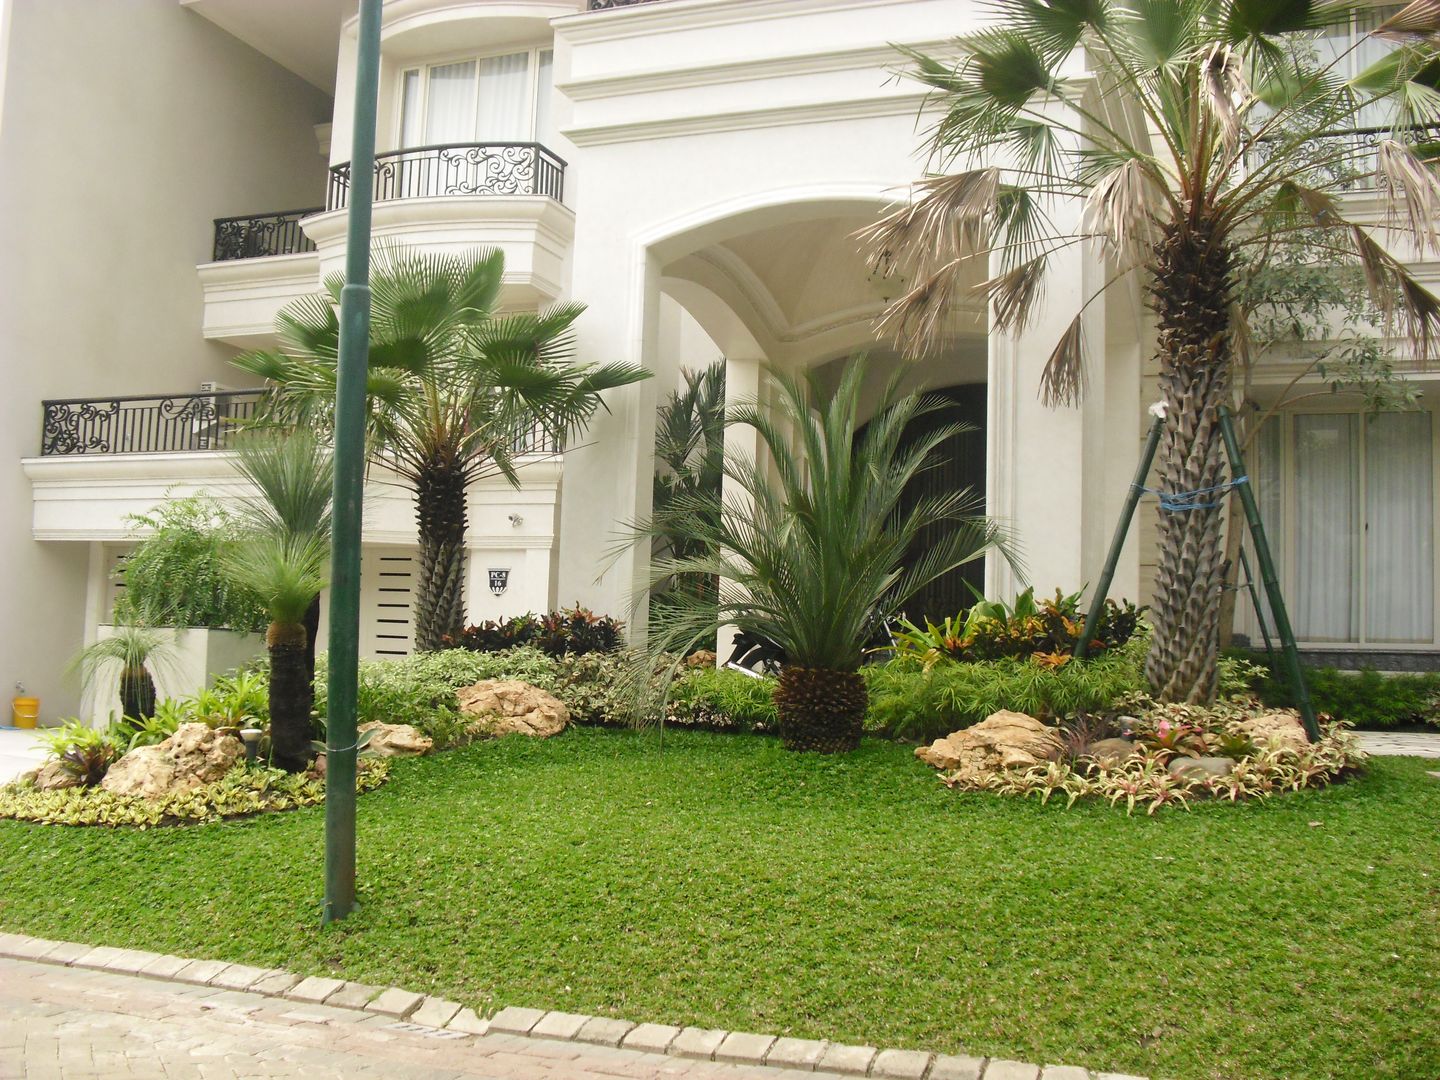 TAMAN TROPIS MODERN, NISCALA GARDEN | Tukang Taman Surabaya NISCALA GARDEN | Tukang Taman Surabaya Jardines de estilo moderno